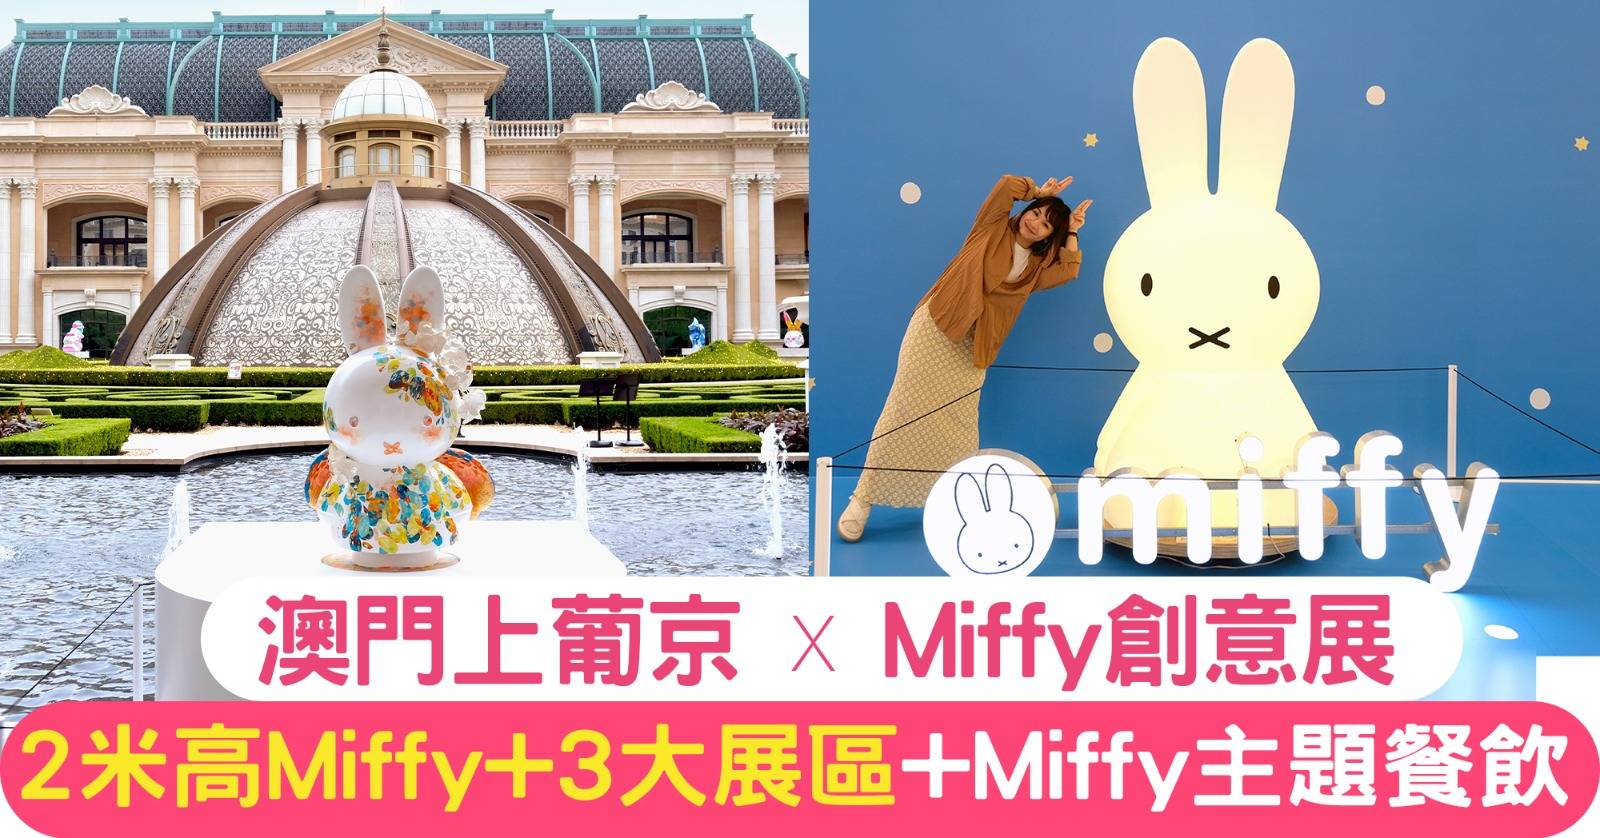 一文即睇！澳門上葡京x《Miffy 創意展》｜2米高Miffy+3大展區+ Miffy主題餐飲